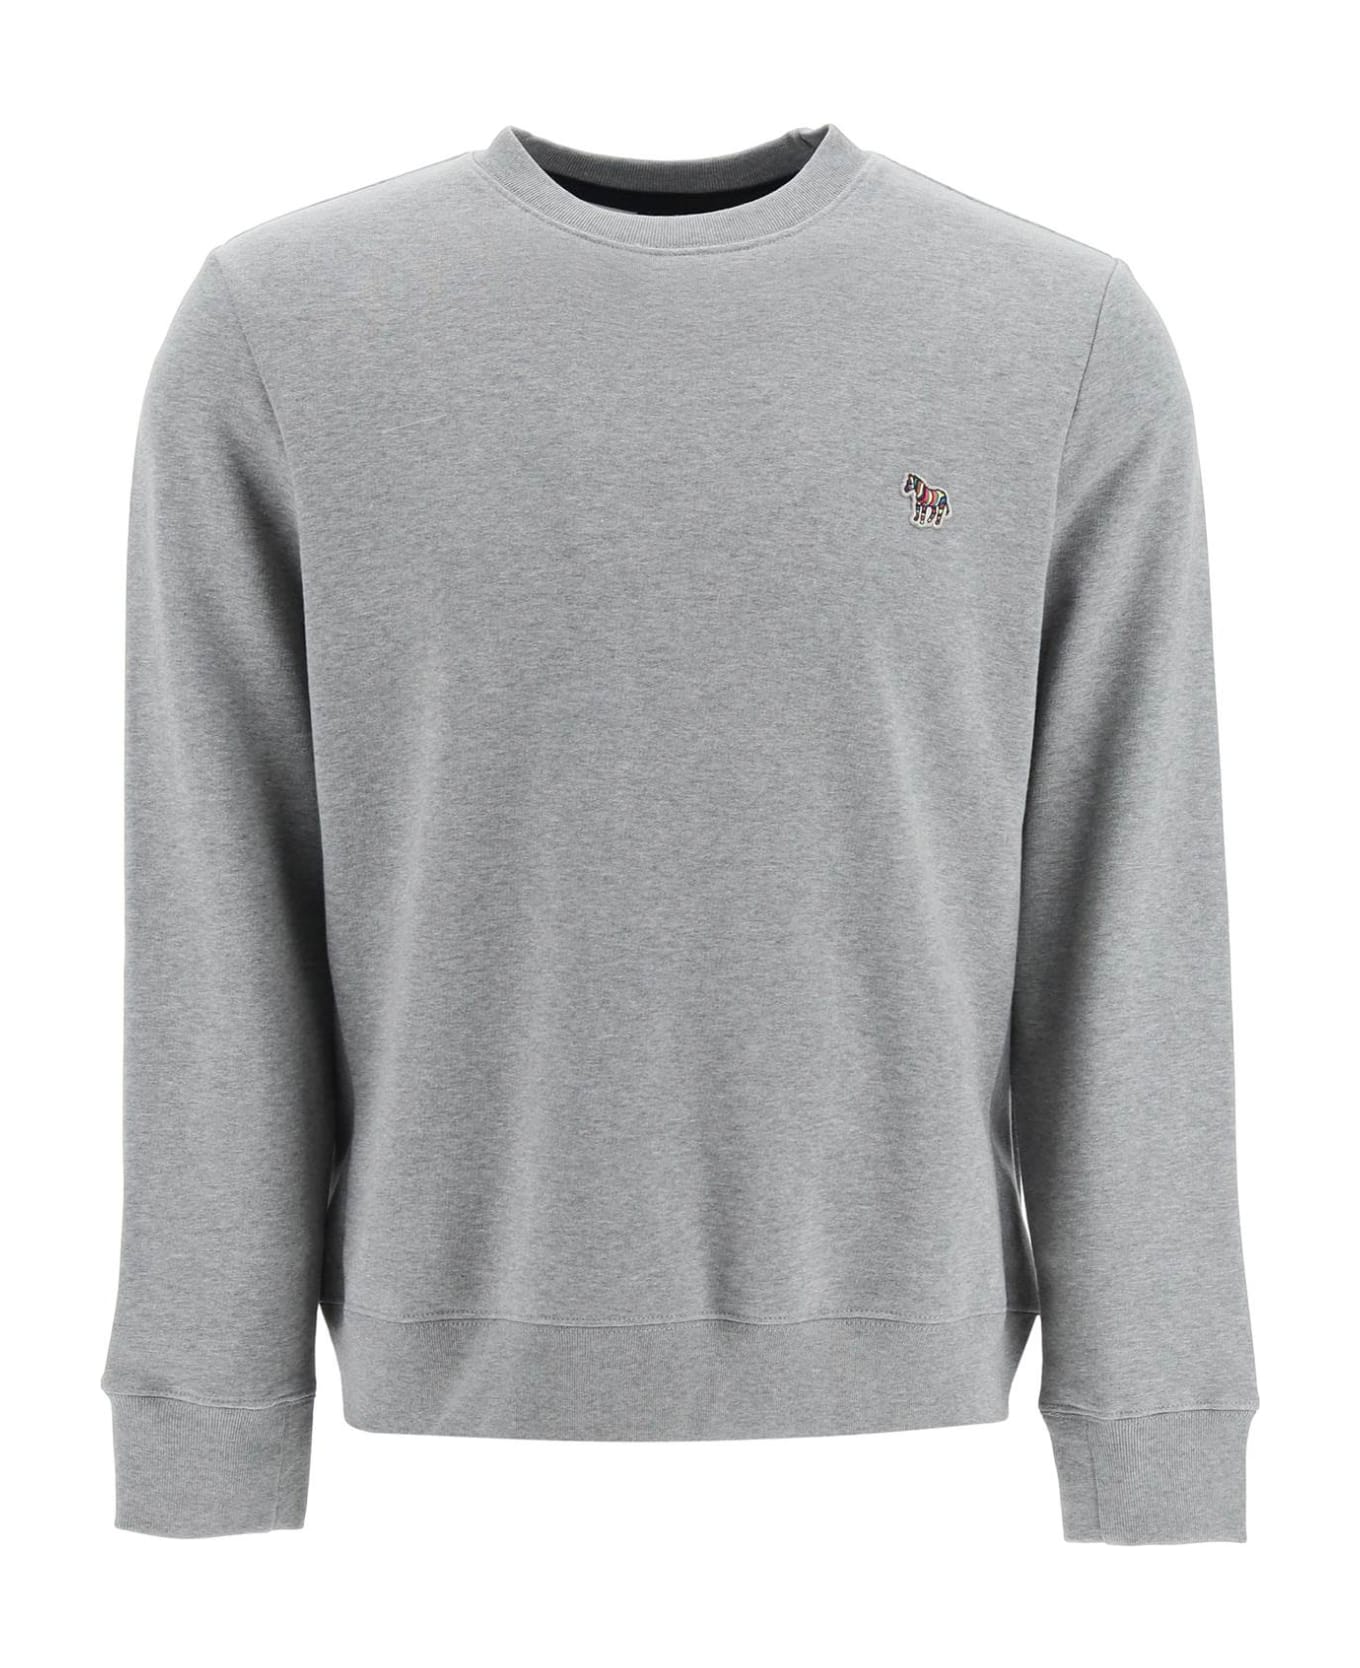 PS by Paul Smith Zebra Logo Sweatshirt With Zebra Logo - GREY MELANGE (Grey)